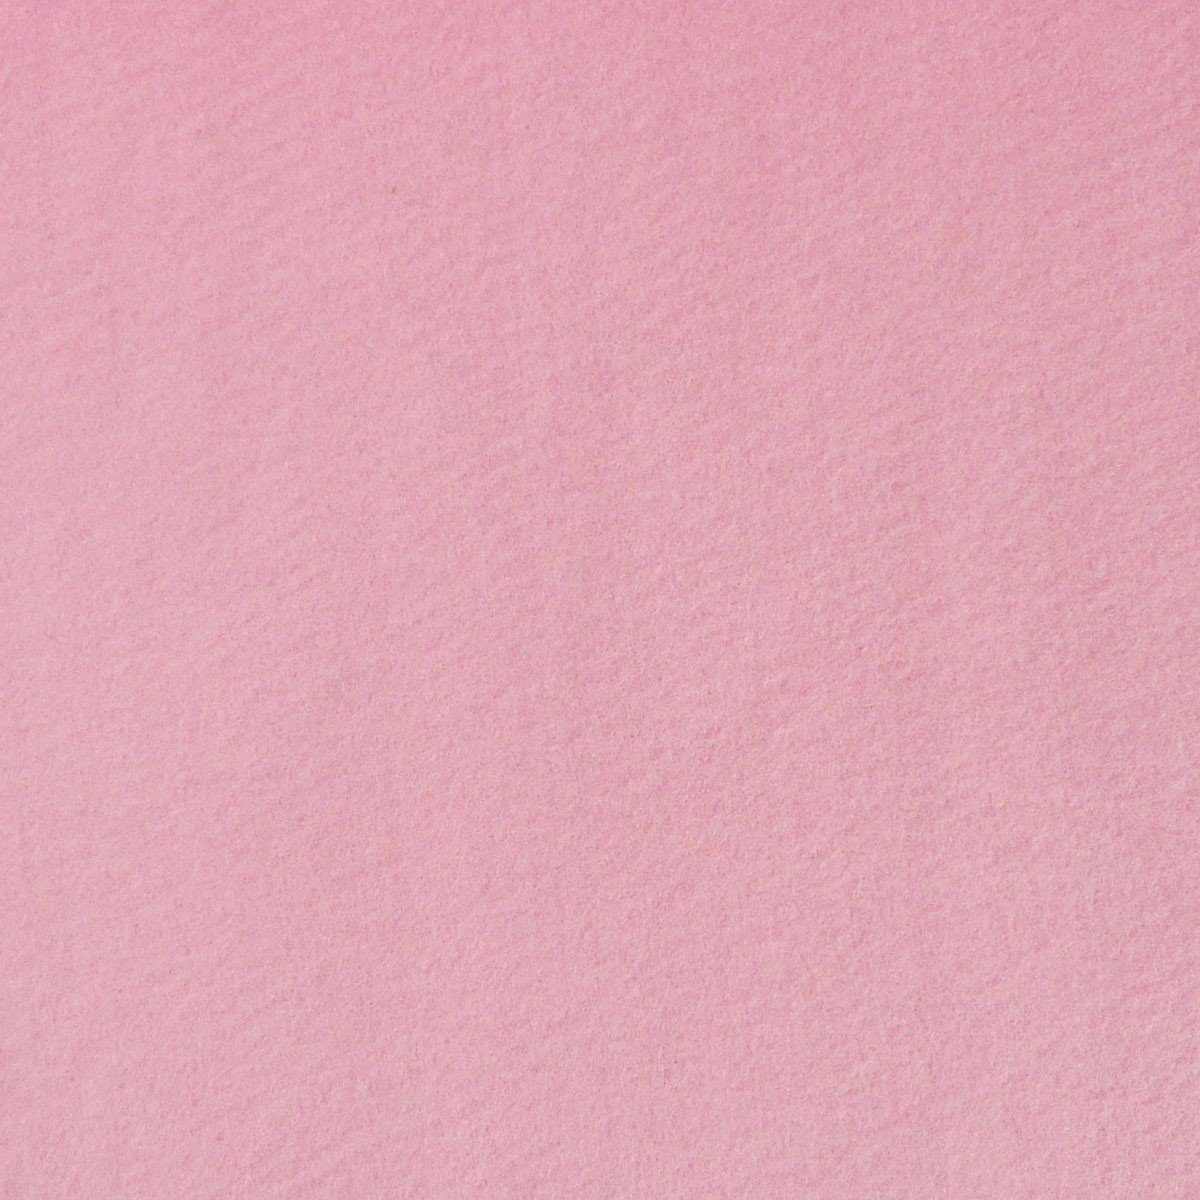 SCHÖNER LEBEN. Stoff Kreativstoff Filz einfarbig rosa 180cm Breite 2mm Stärke